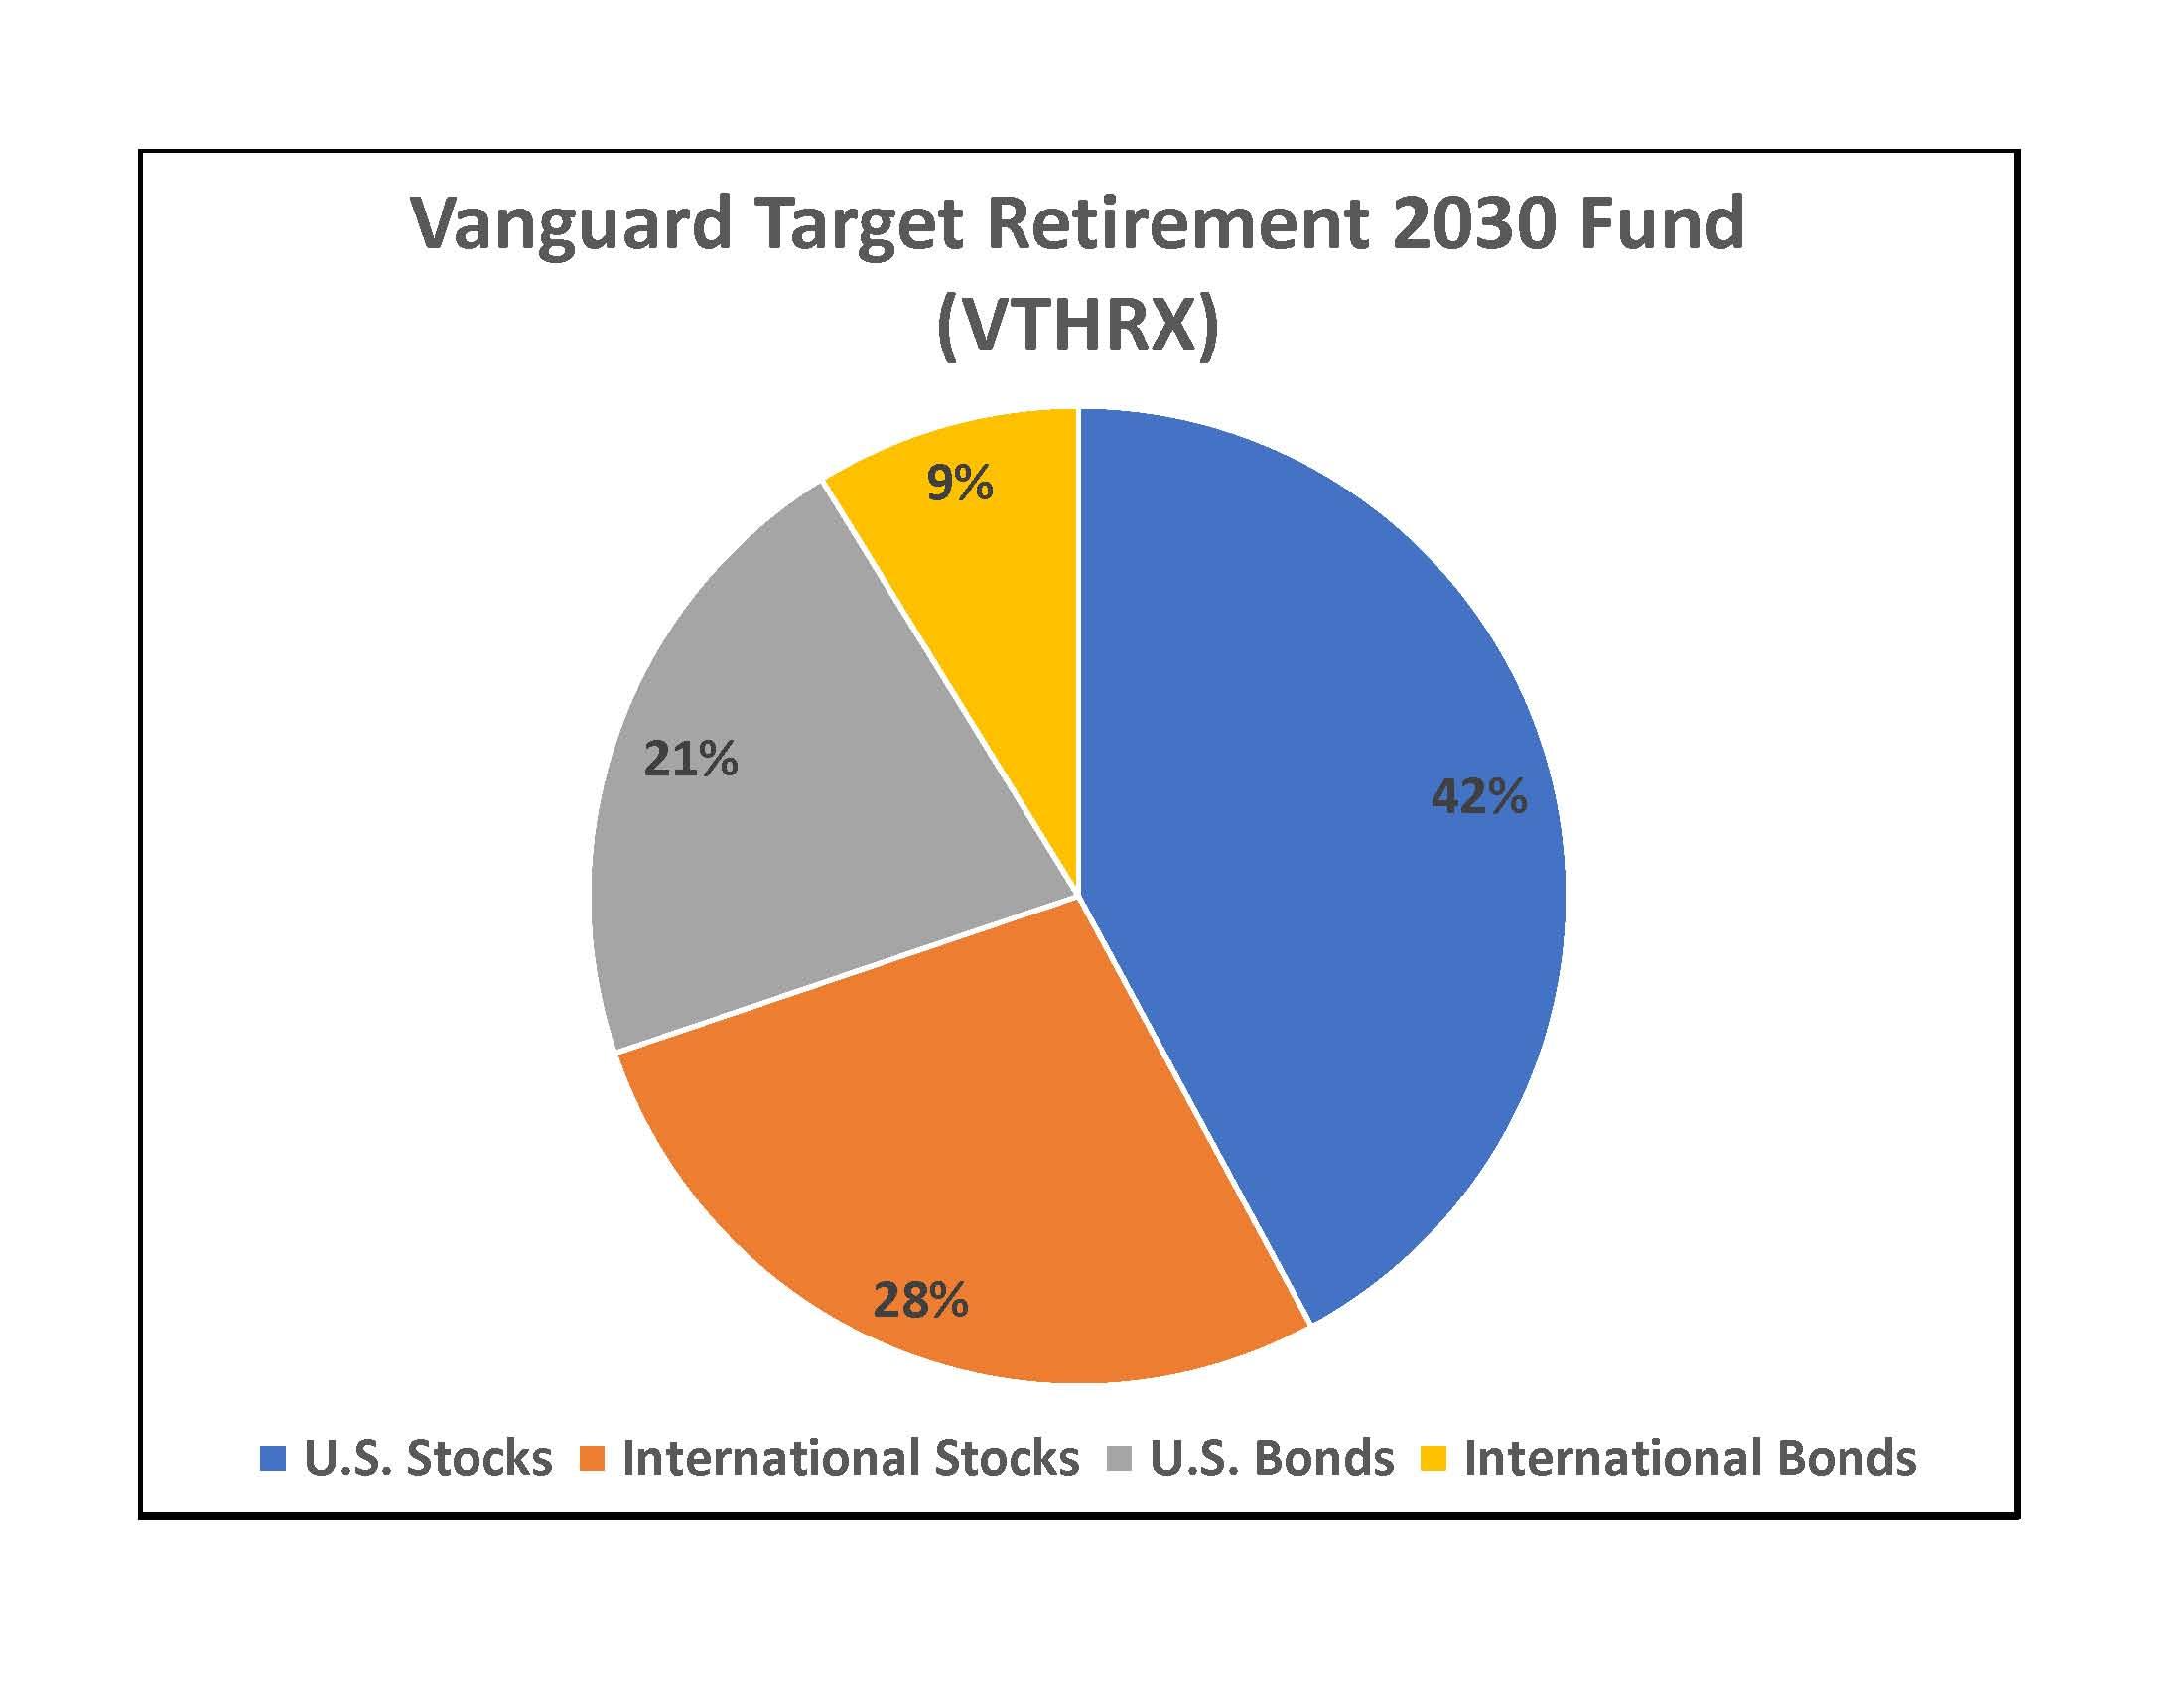 Vanguard Stock Chart